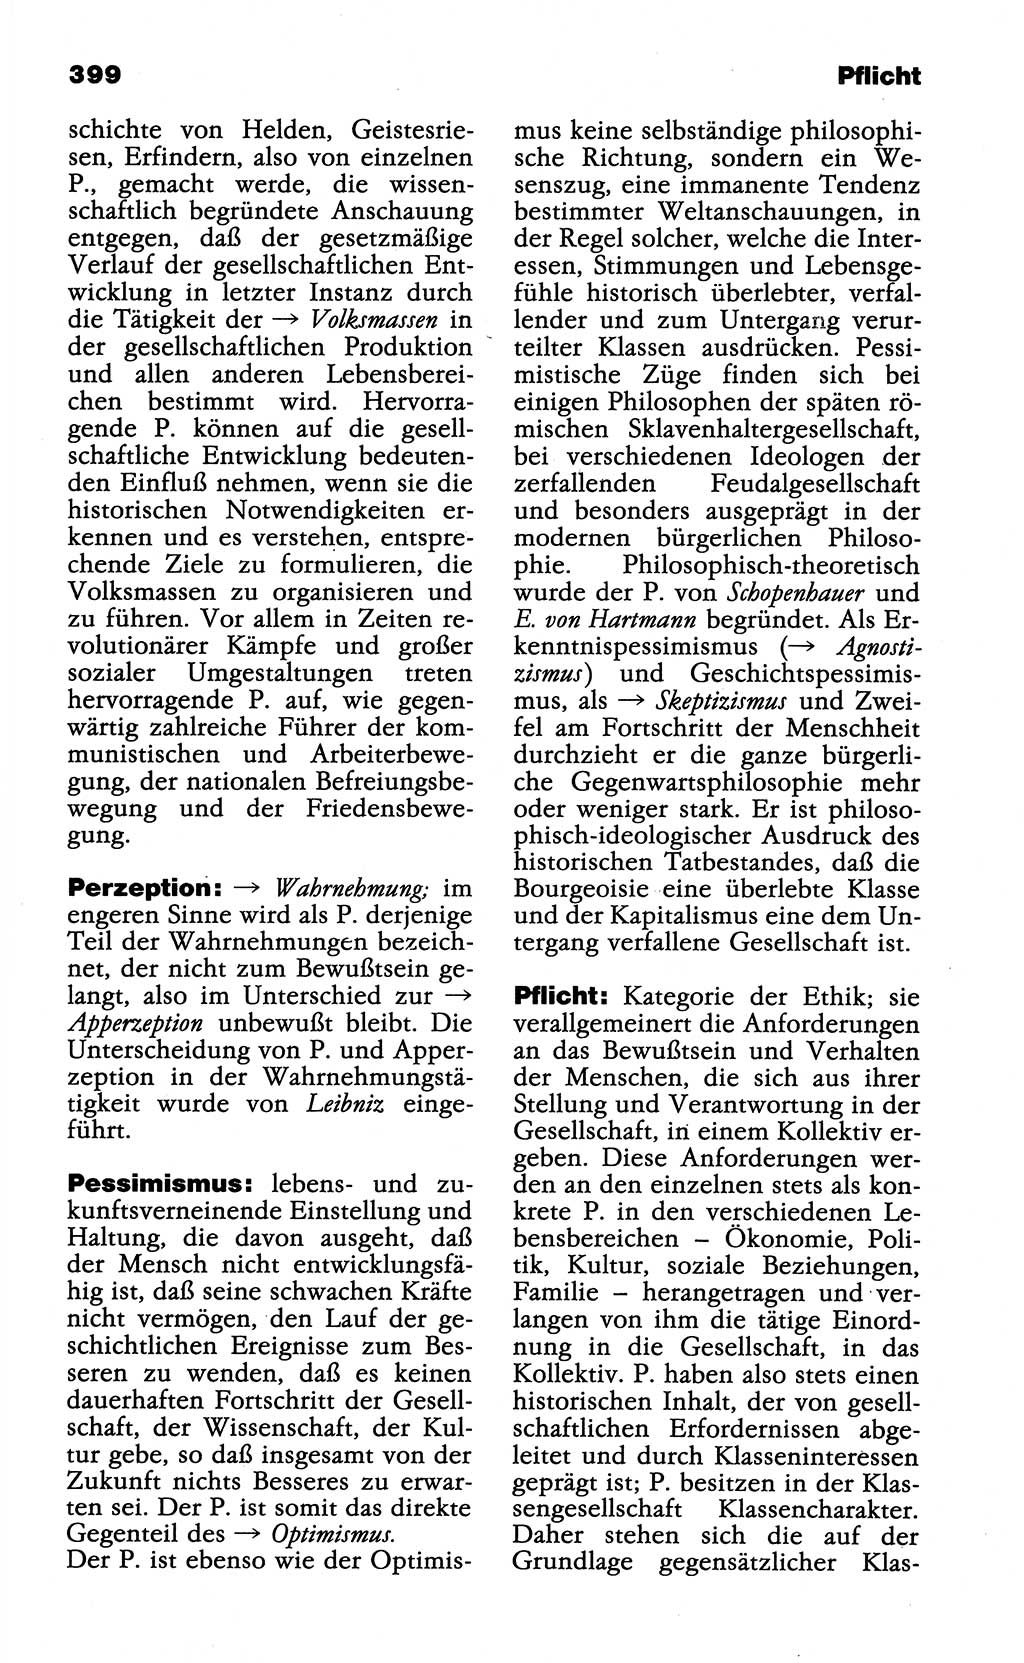 Wörterbuch der marxistisch-leninistischen Philosophie [Deutsche Demokratische Republik (DDR)] 1985, Seite 399 (Wb. ML Phil. DDR 1985, S. 399)